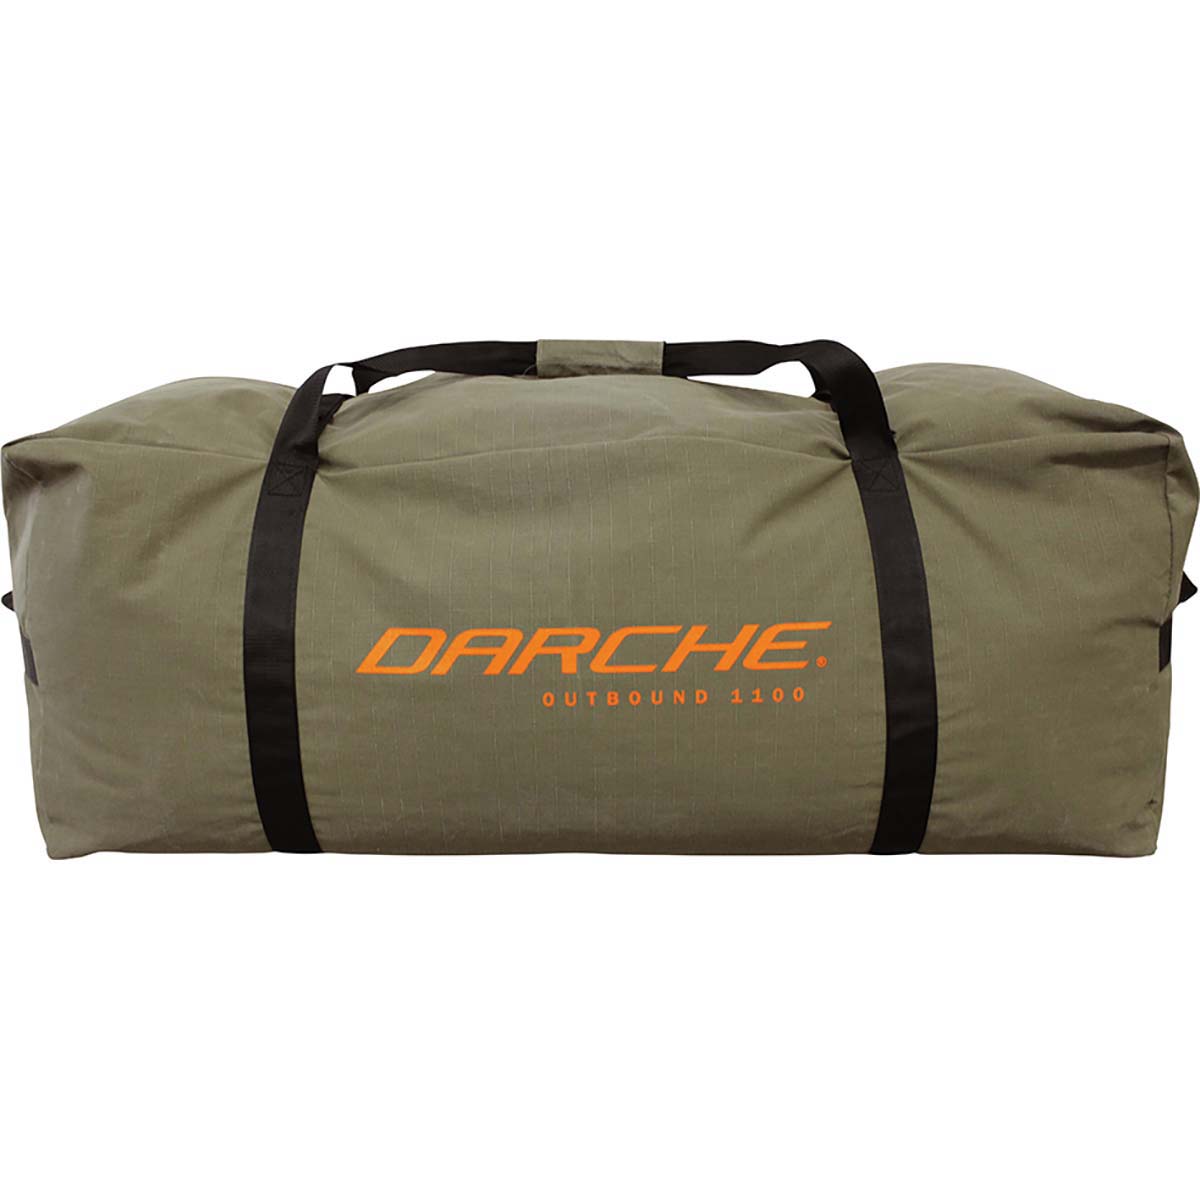 Darche Outbound 1100 Storage Bag